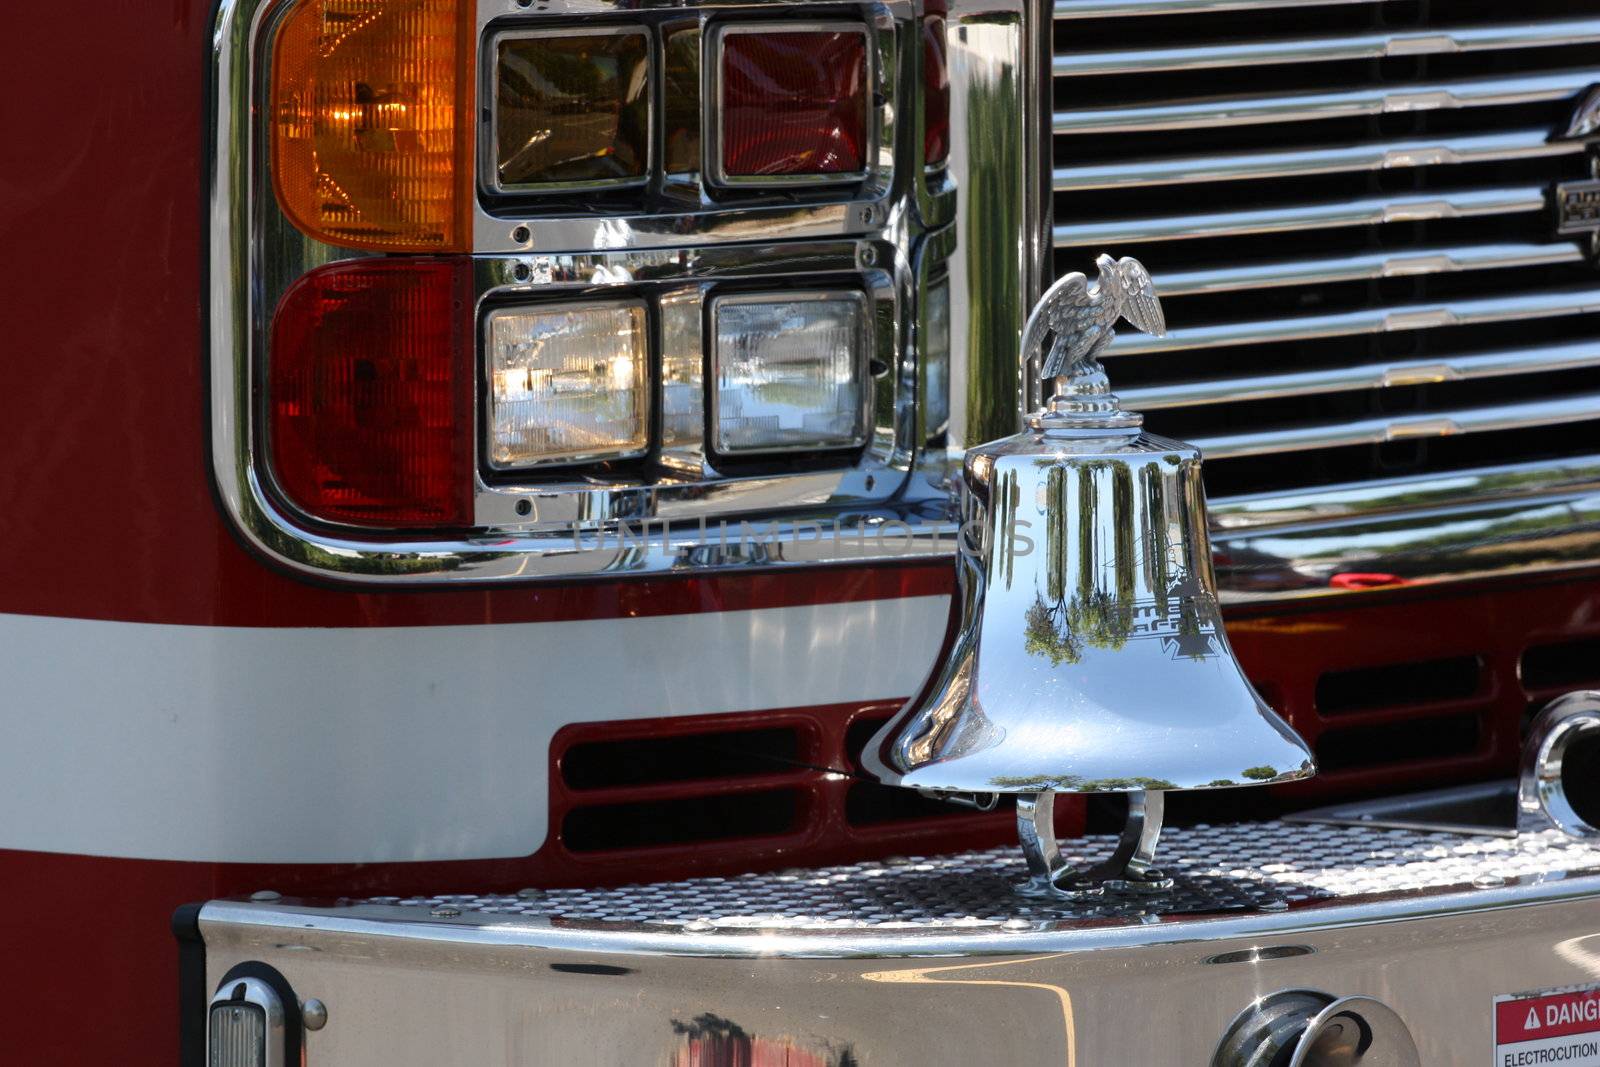 Fire truck close up.